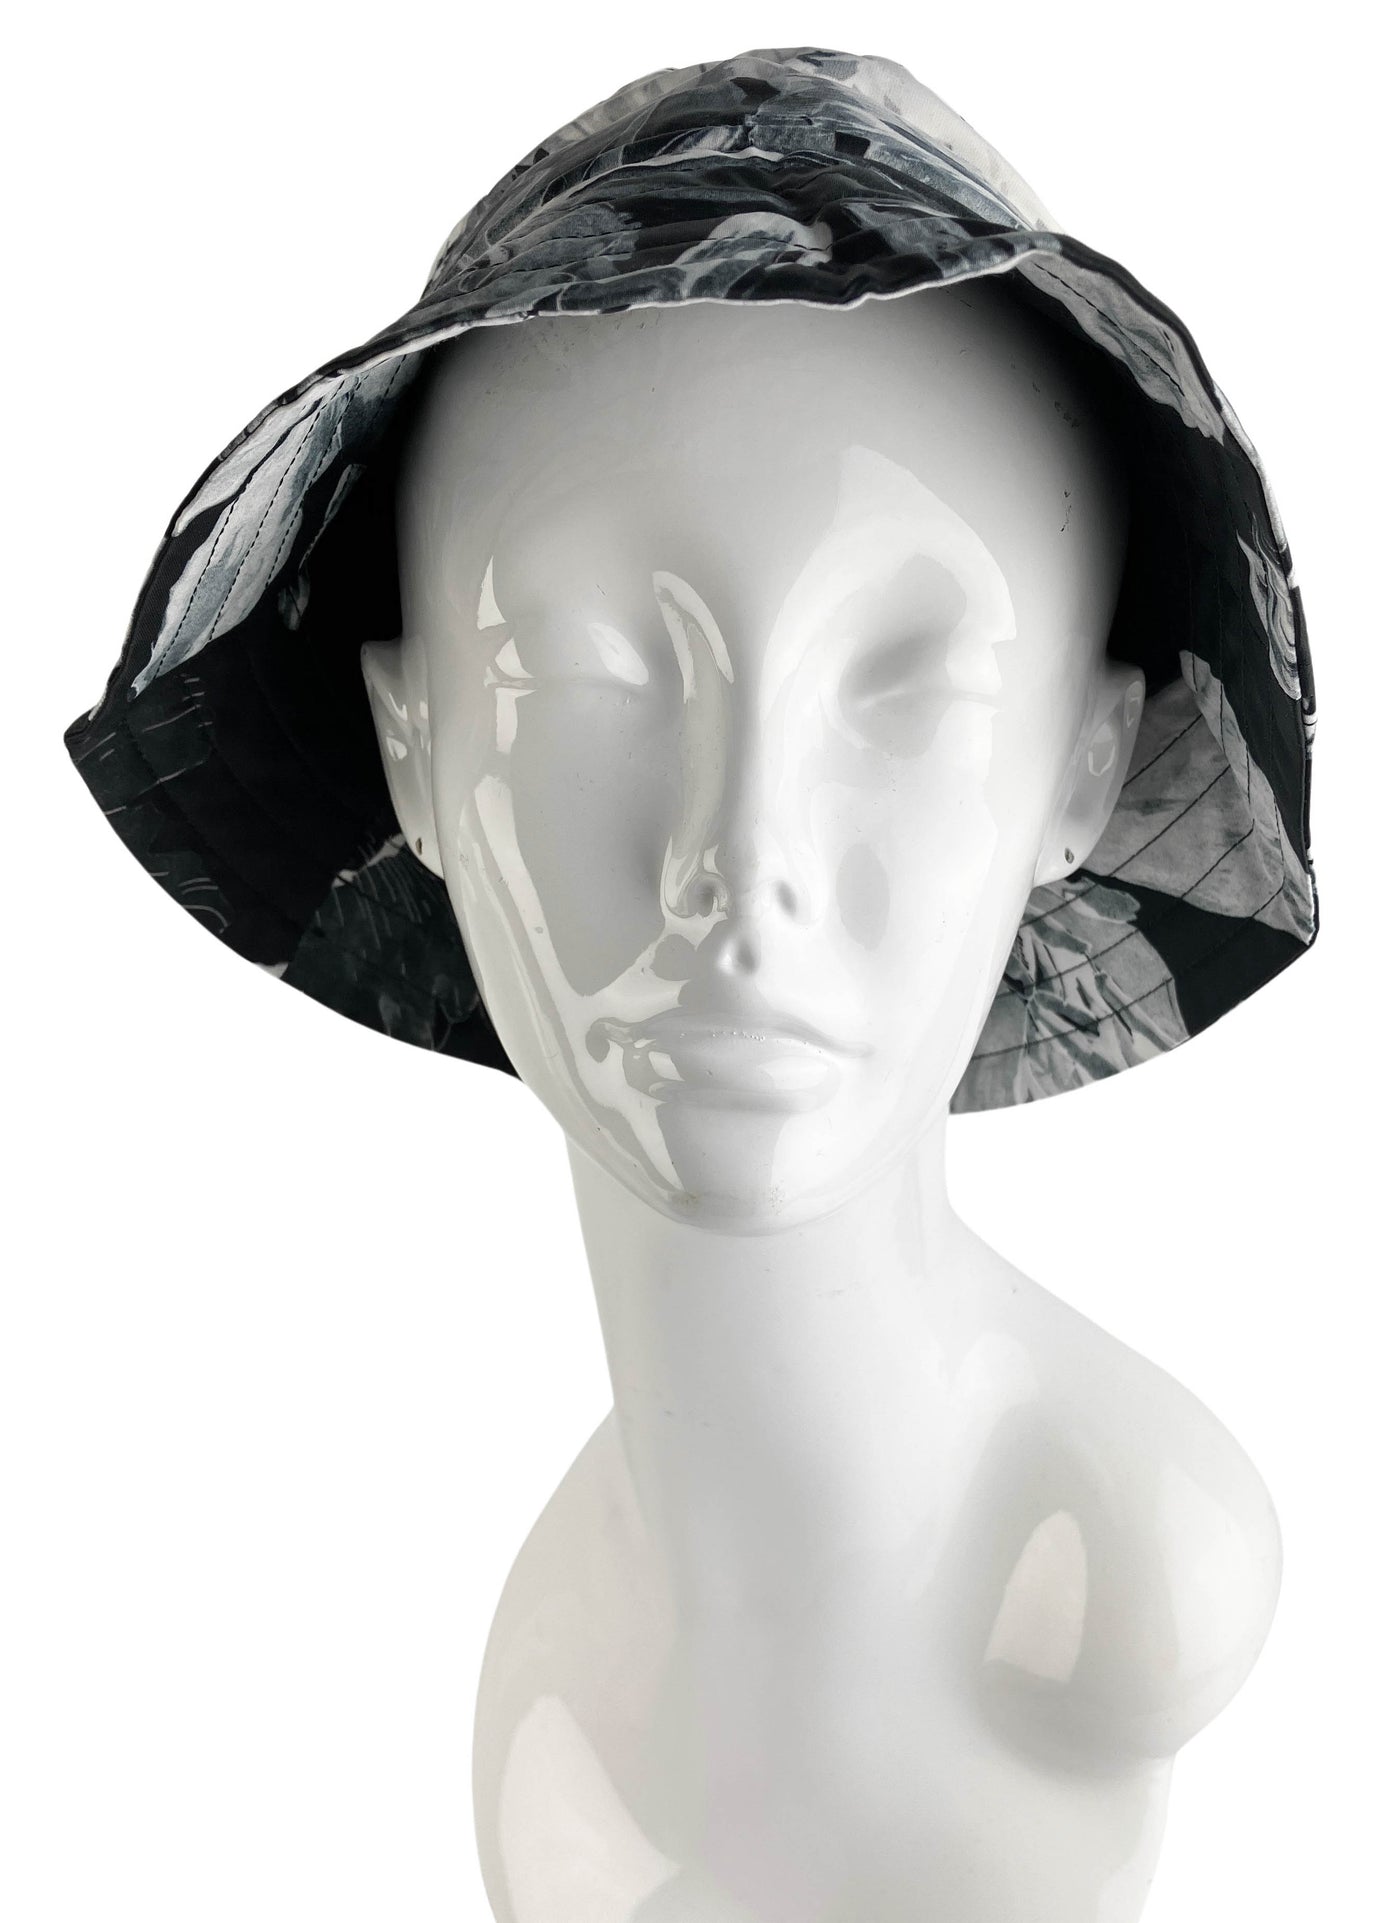 Dries Van Noten Gulia Bucket Hat in Black/White Dessin - Discounts on Dries Van Noten at UAL